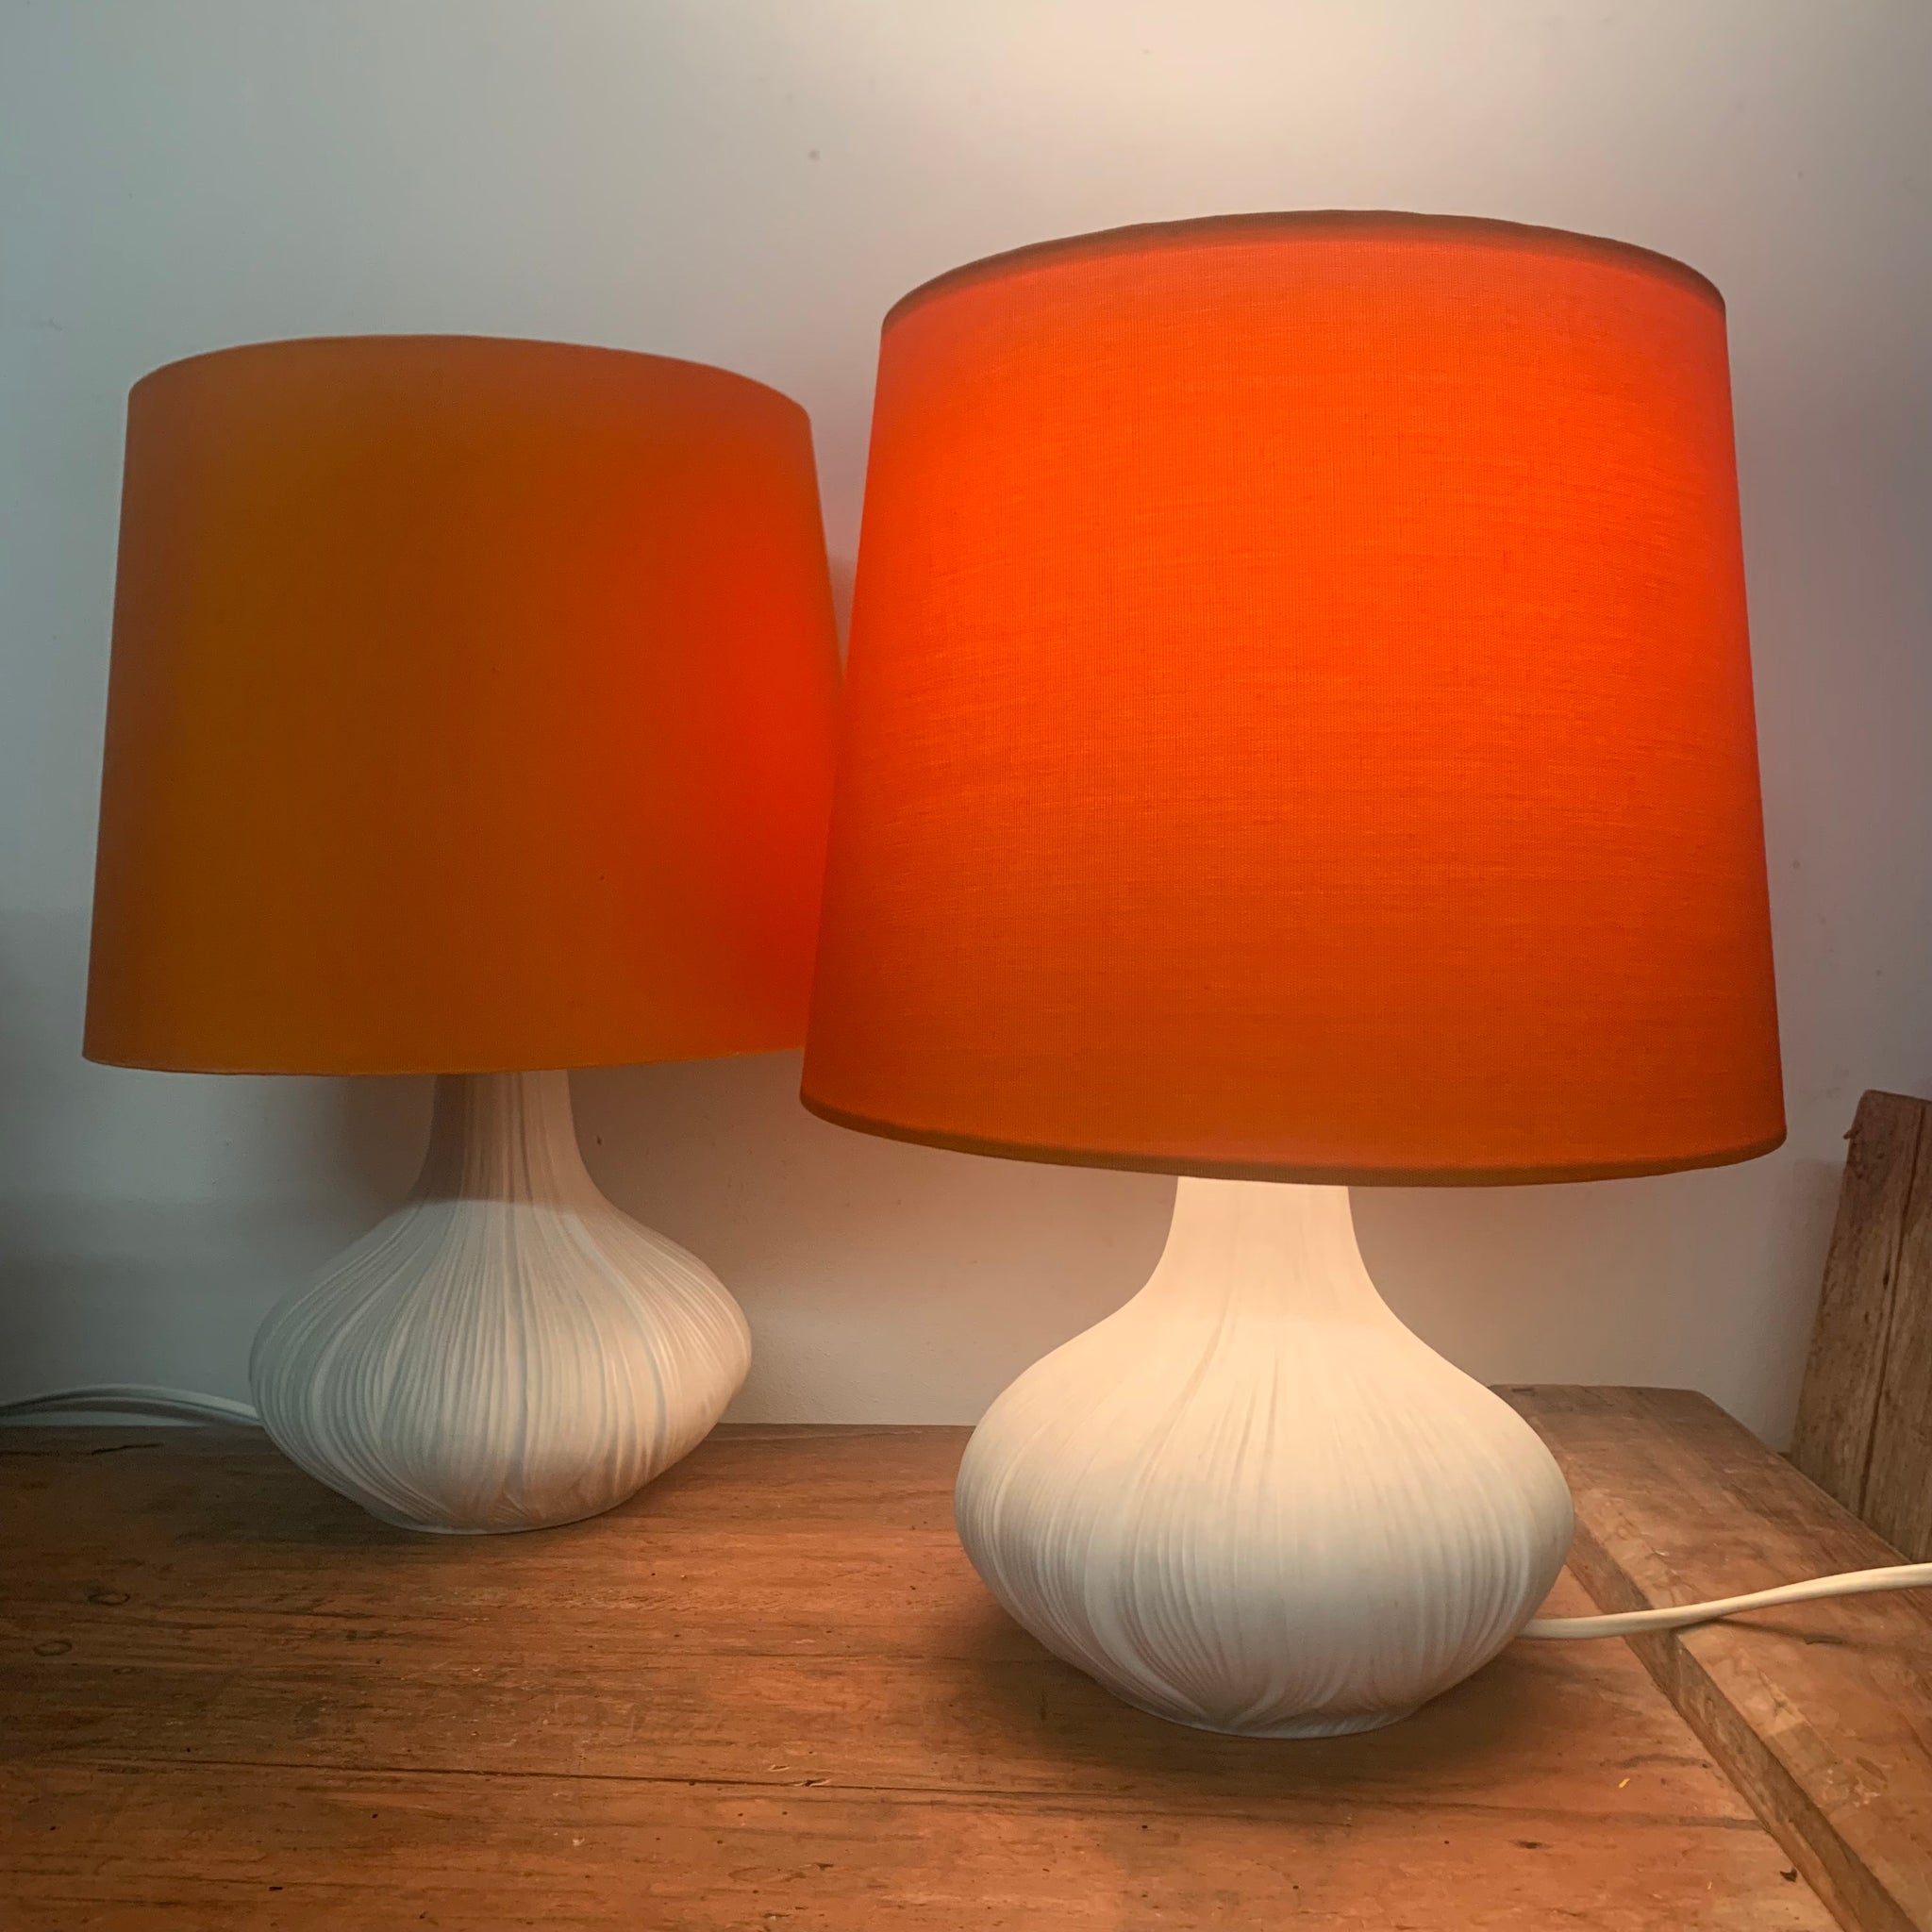 Paar vintage Nachttisch Lampen aus Biskuitporzellan von Rosenthal